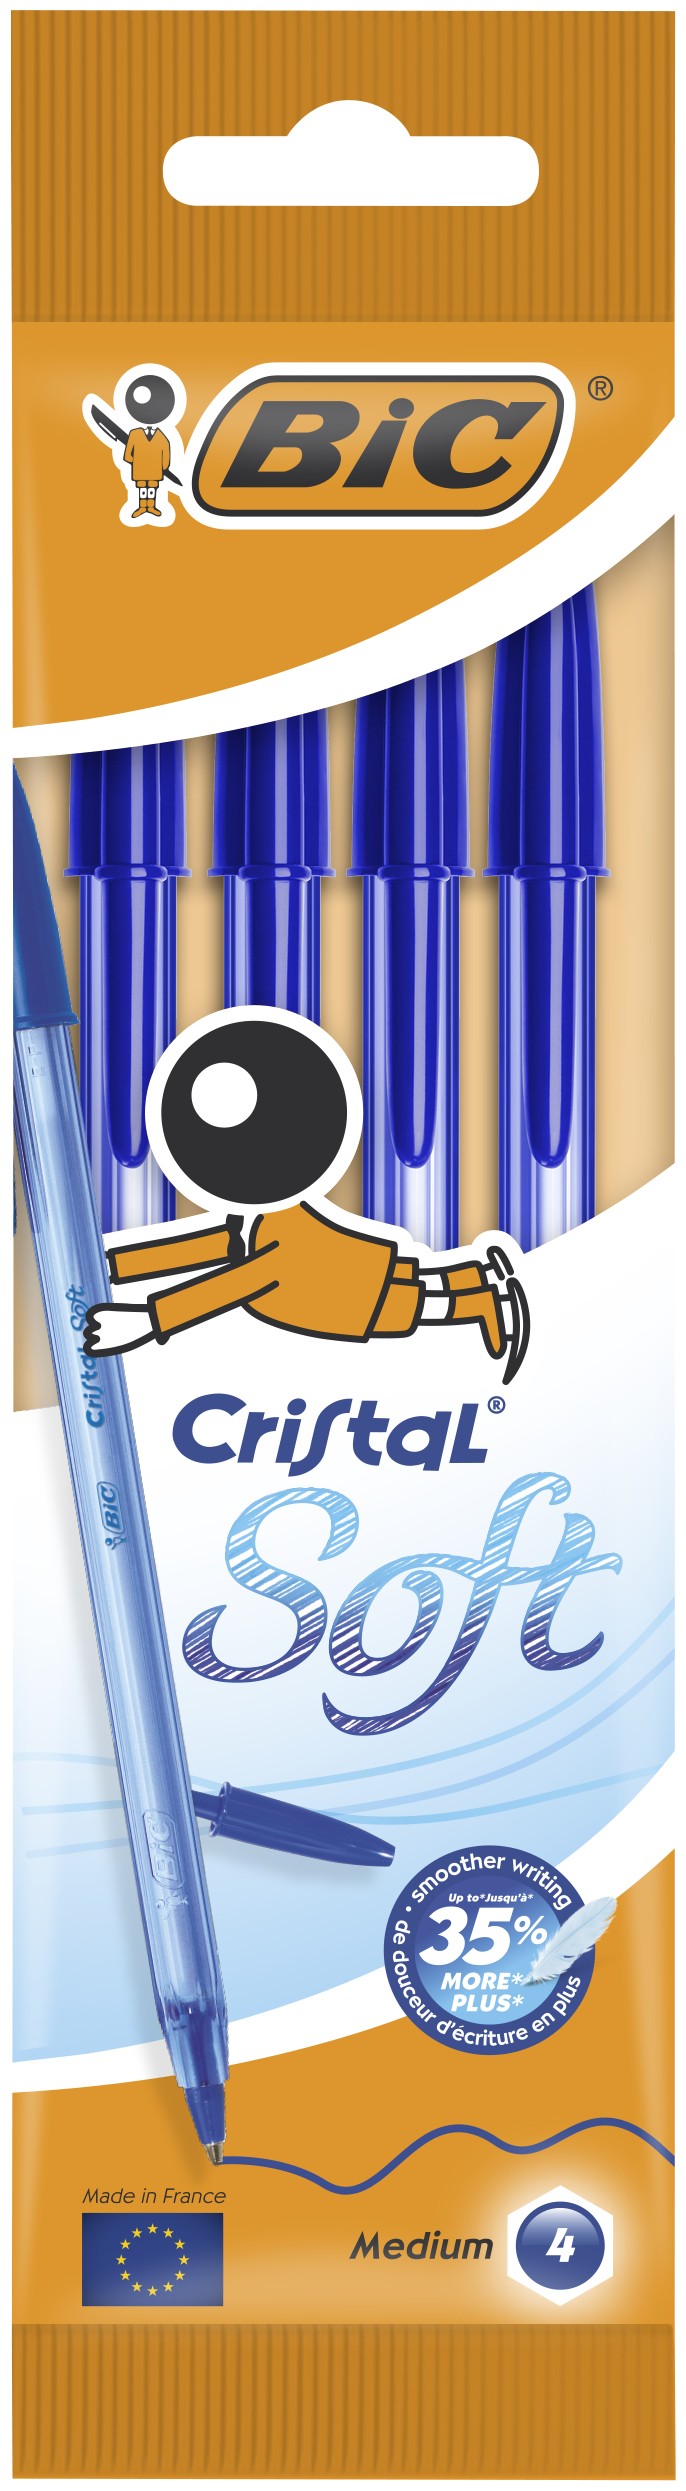 BIC Cristal Soft, Penne Blu a Sfera (Punta Media 1.2mm), Confezione da 4 -  Penne - Esseshop - Il tuo Partner in Informatica, PC e Networking